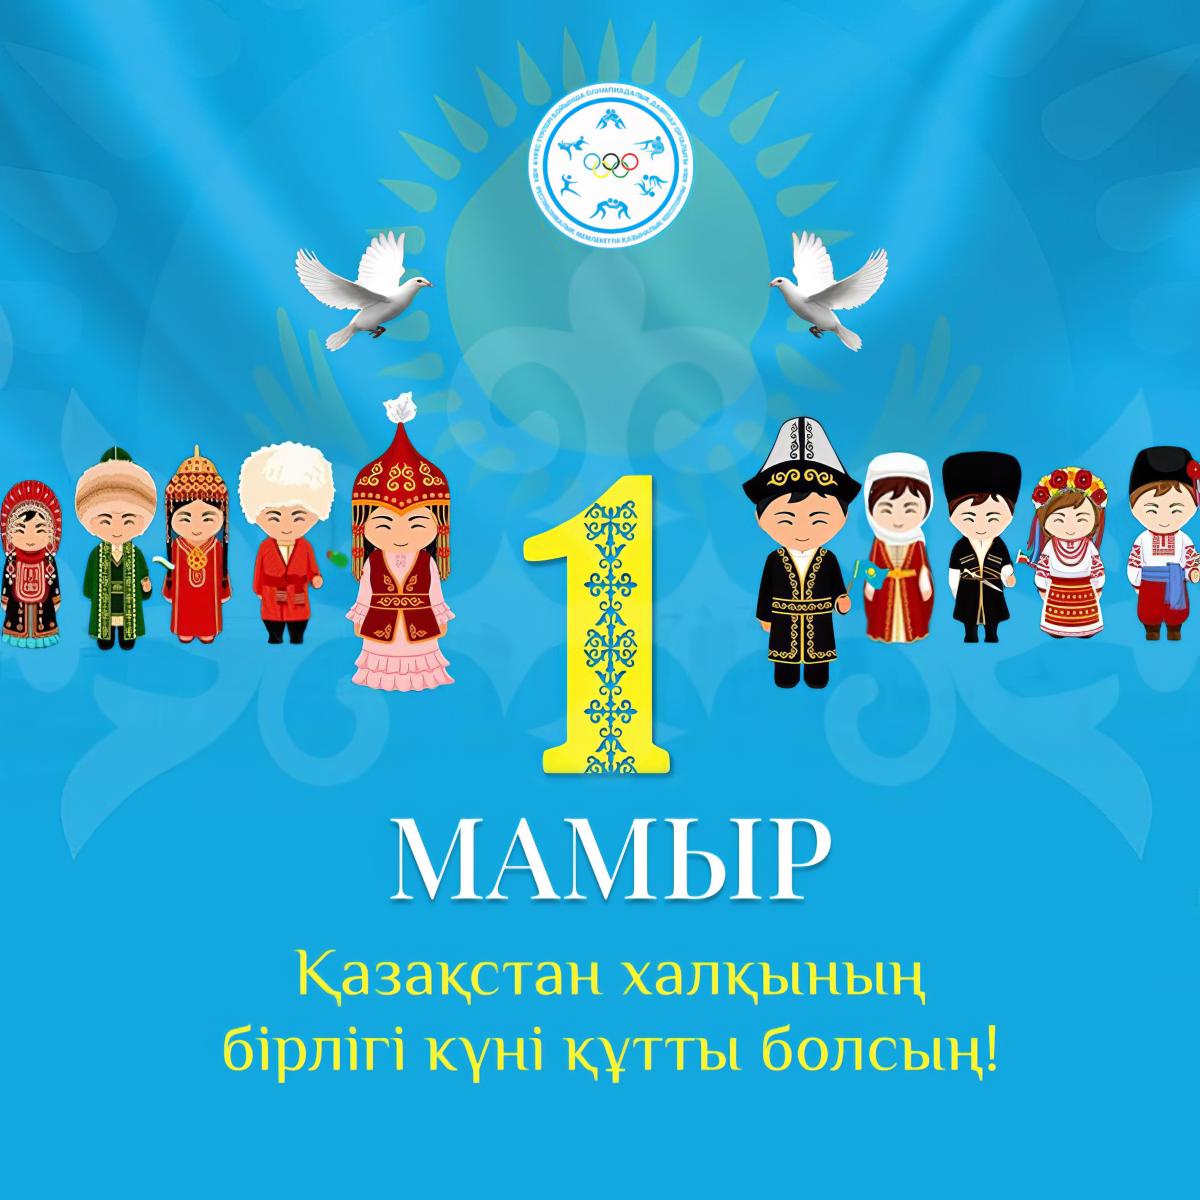 Поздравляем с 1 мая - Днём единства народа Казахстана!